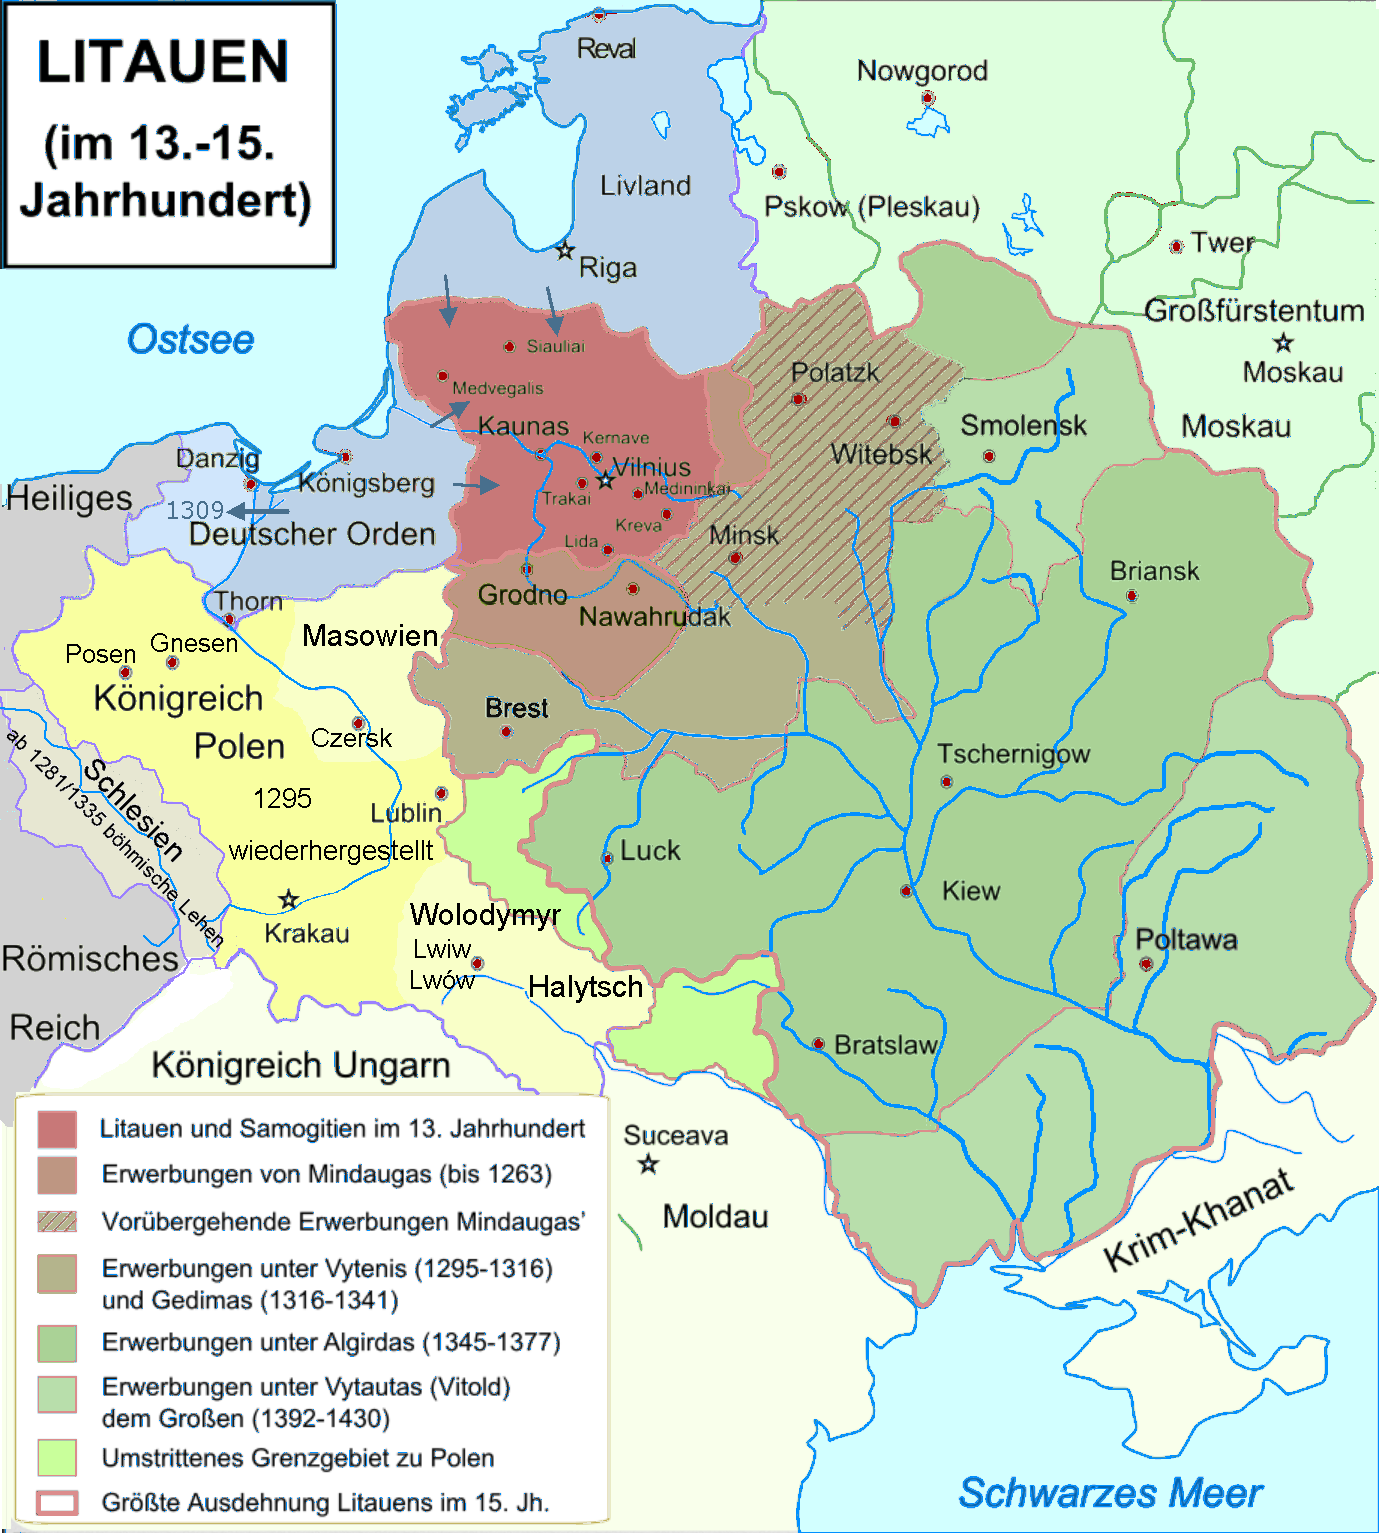 Großfürstentum Litauen 13 –15 Jh